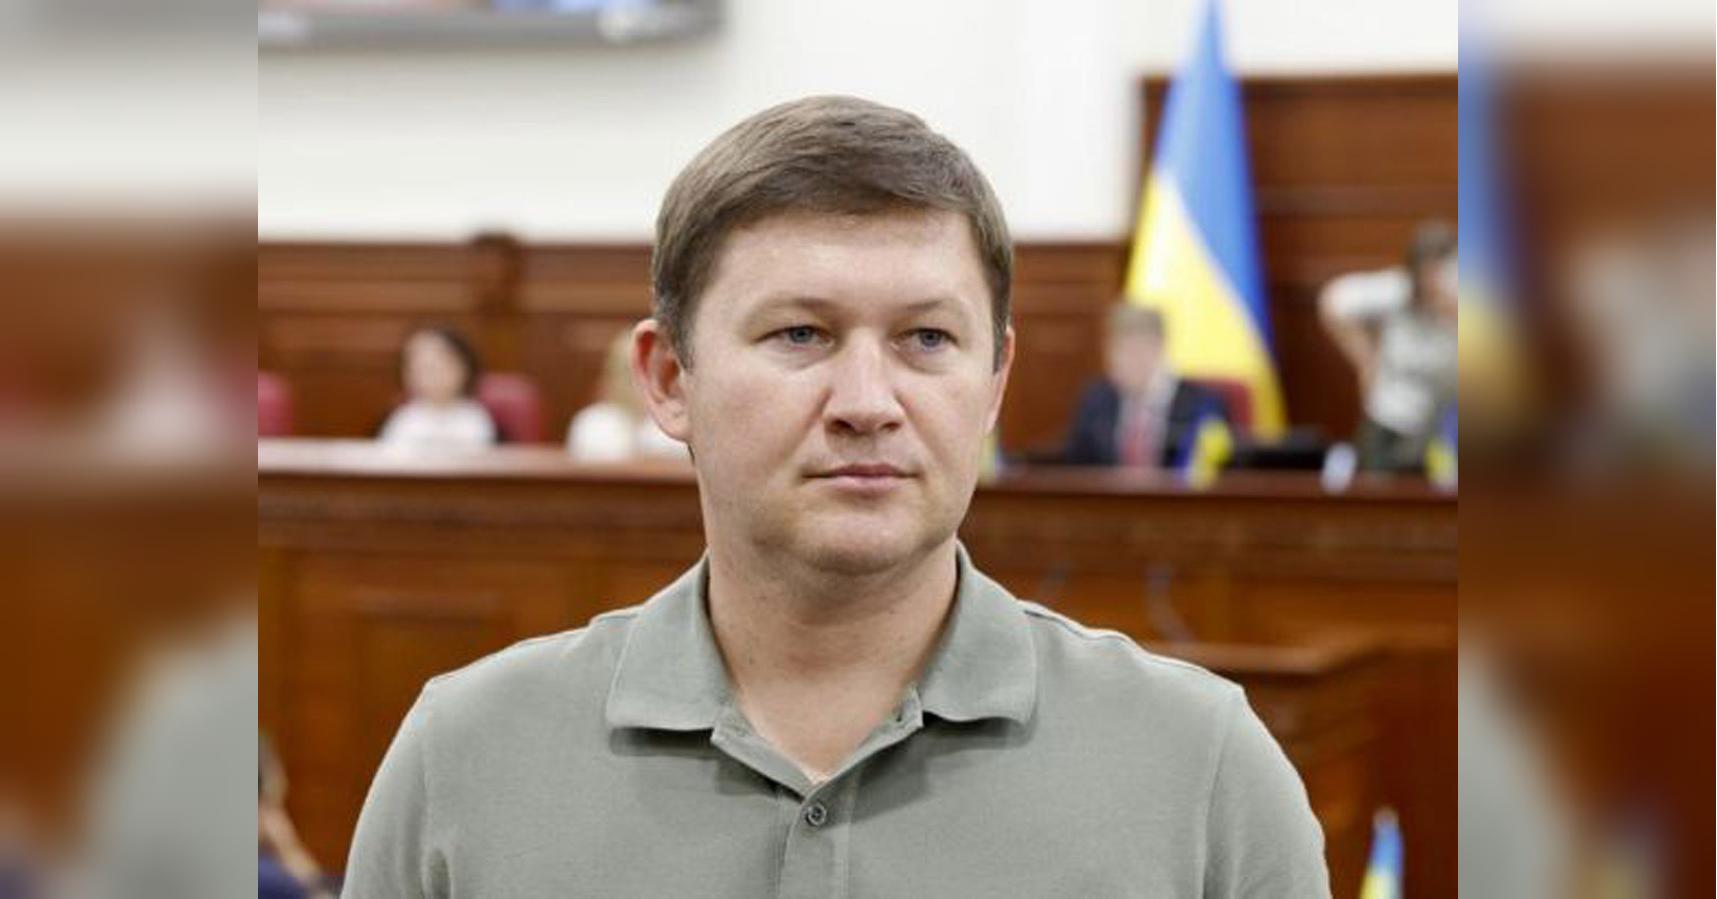 Поступився посадою головному інженеру: начальник київського метро написав заяву на звільнення